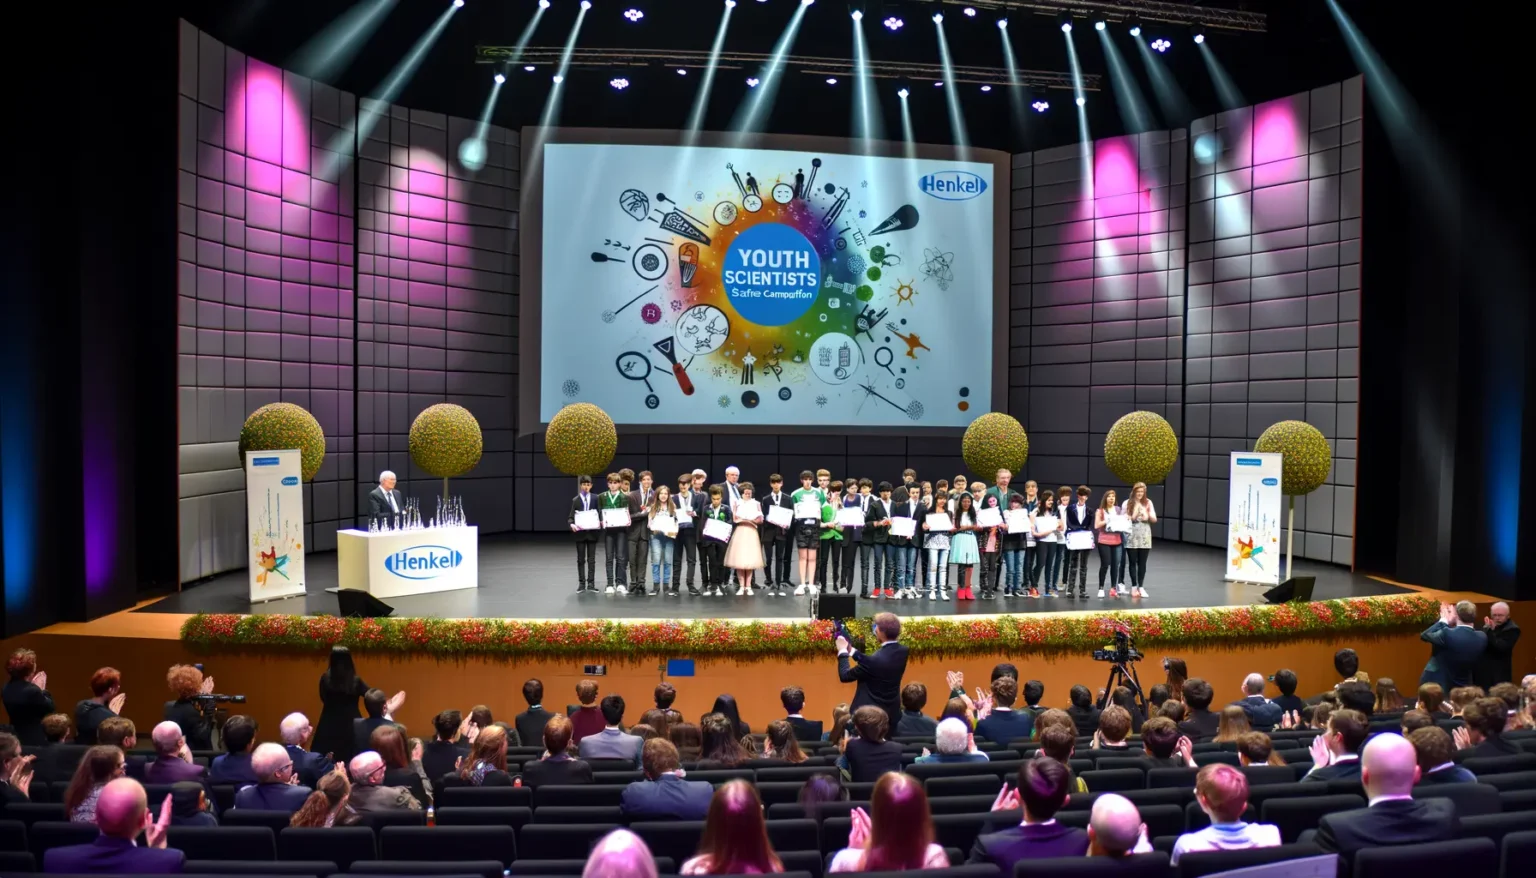 Gruppe junger Wissenschaftler auf einer Bühne bei einer Preisverleihung, Zuschauer klatschen, im Hintergrund eine große Leinwand mit der Aufschrift "YOUTH SCIENTISTS" und das Logo von Henkel.